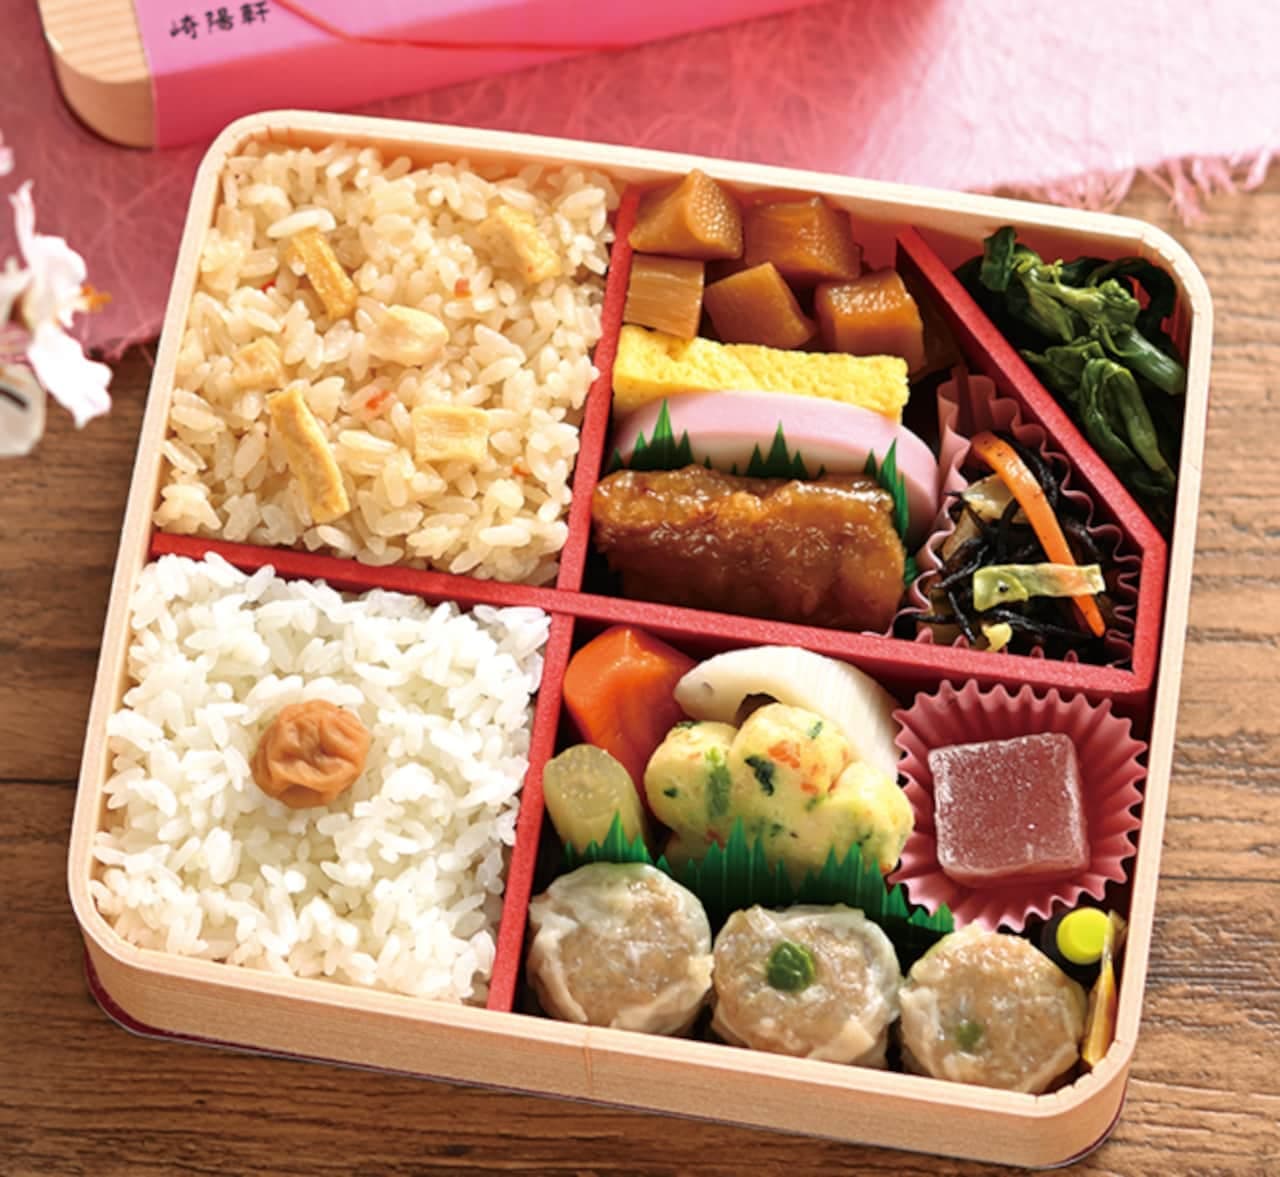 Sakiyo-ken "Spring Kanagawa Ajiwai Bento" (Spring Ajiwai Lunchbox)